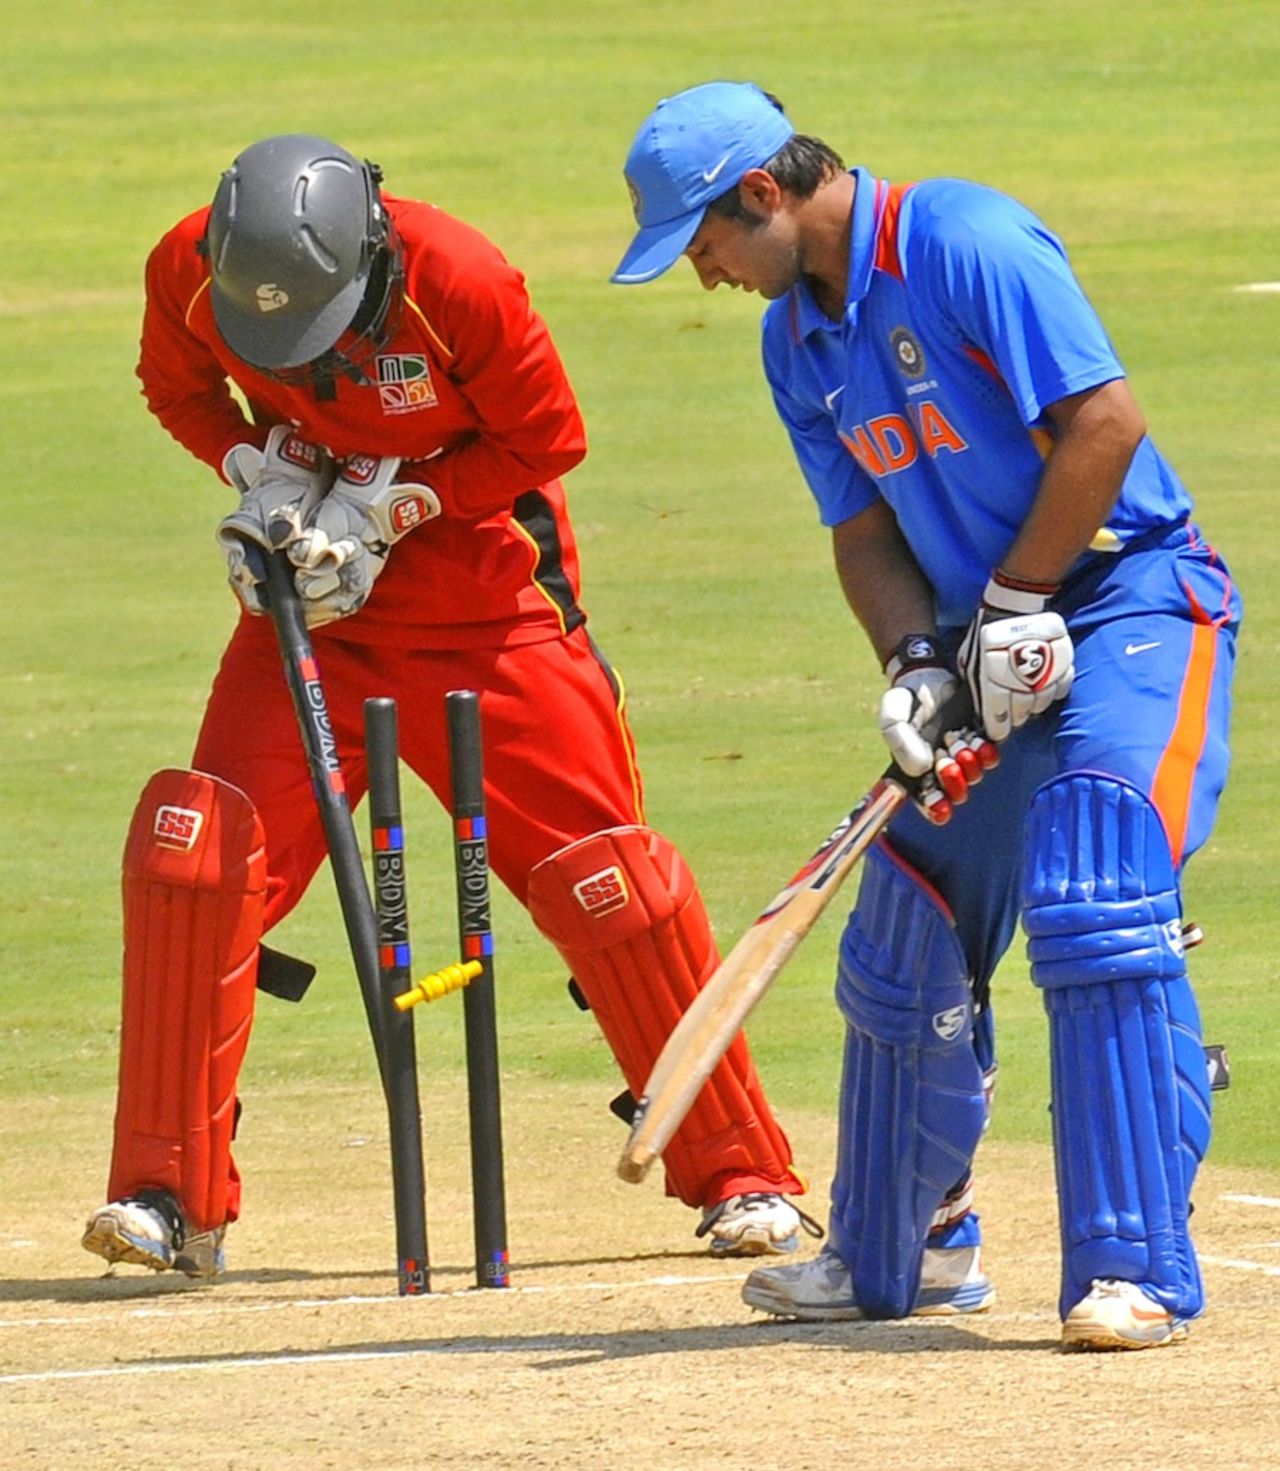 Ankush Bains was bowled for 49, India Under-19s v Zimbabwe Under-19s, Visakhapatnam, Sep 23, 2013